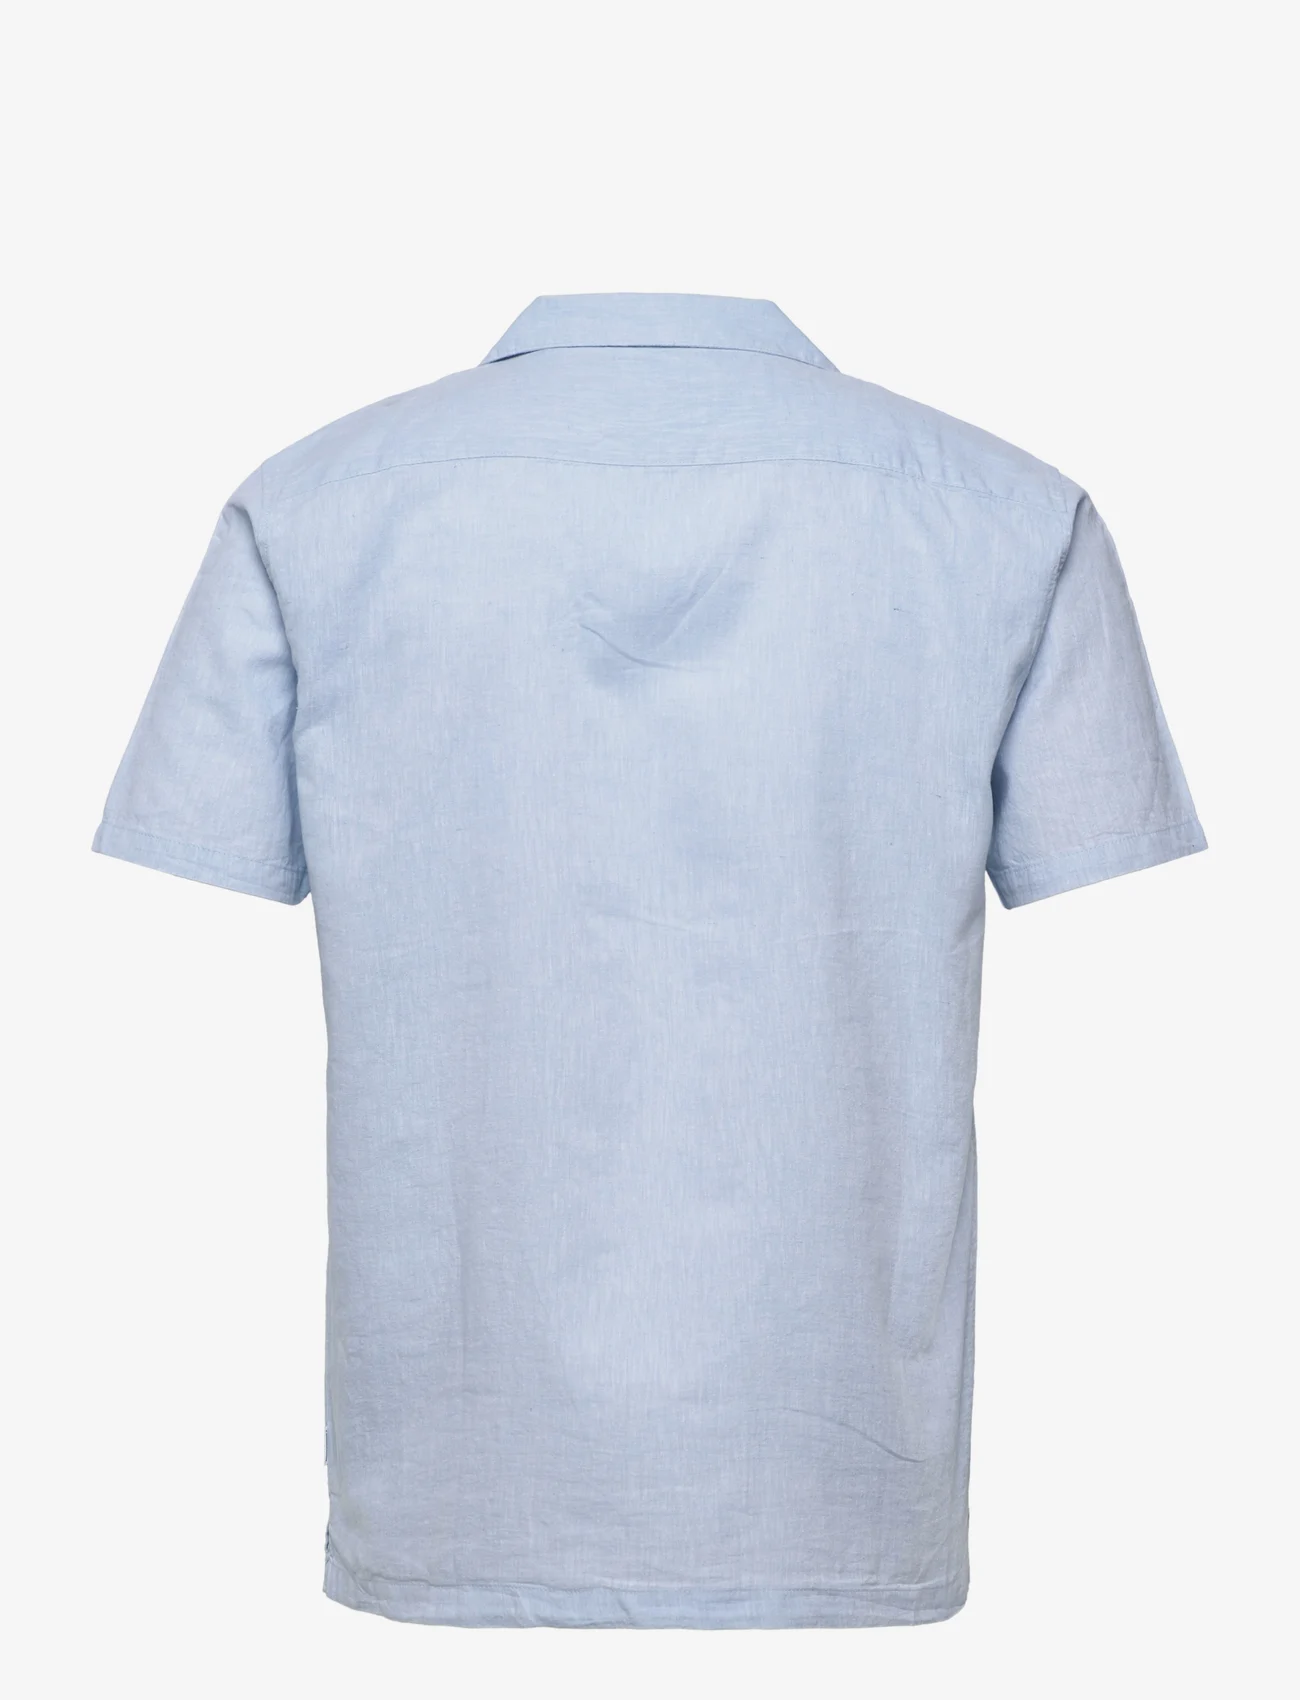 Lindbergh - Casual linen blend resort S/S - koszule lniane - light blue - 1